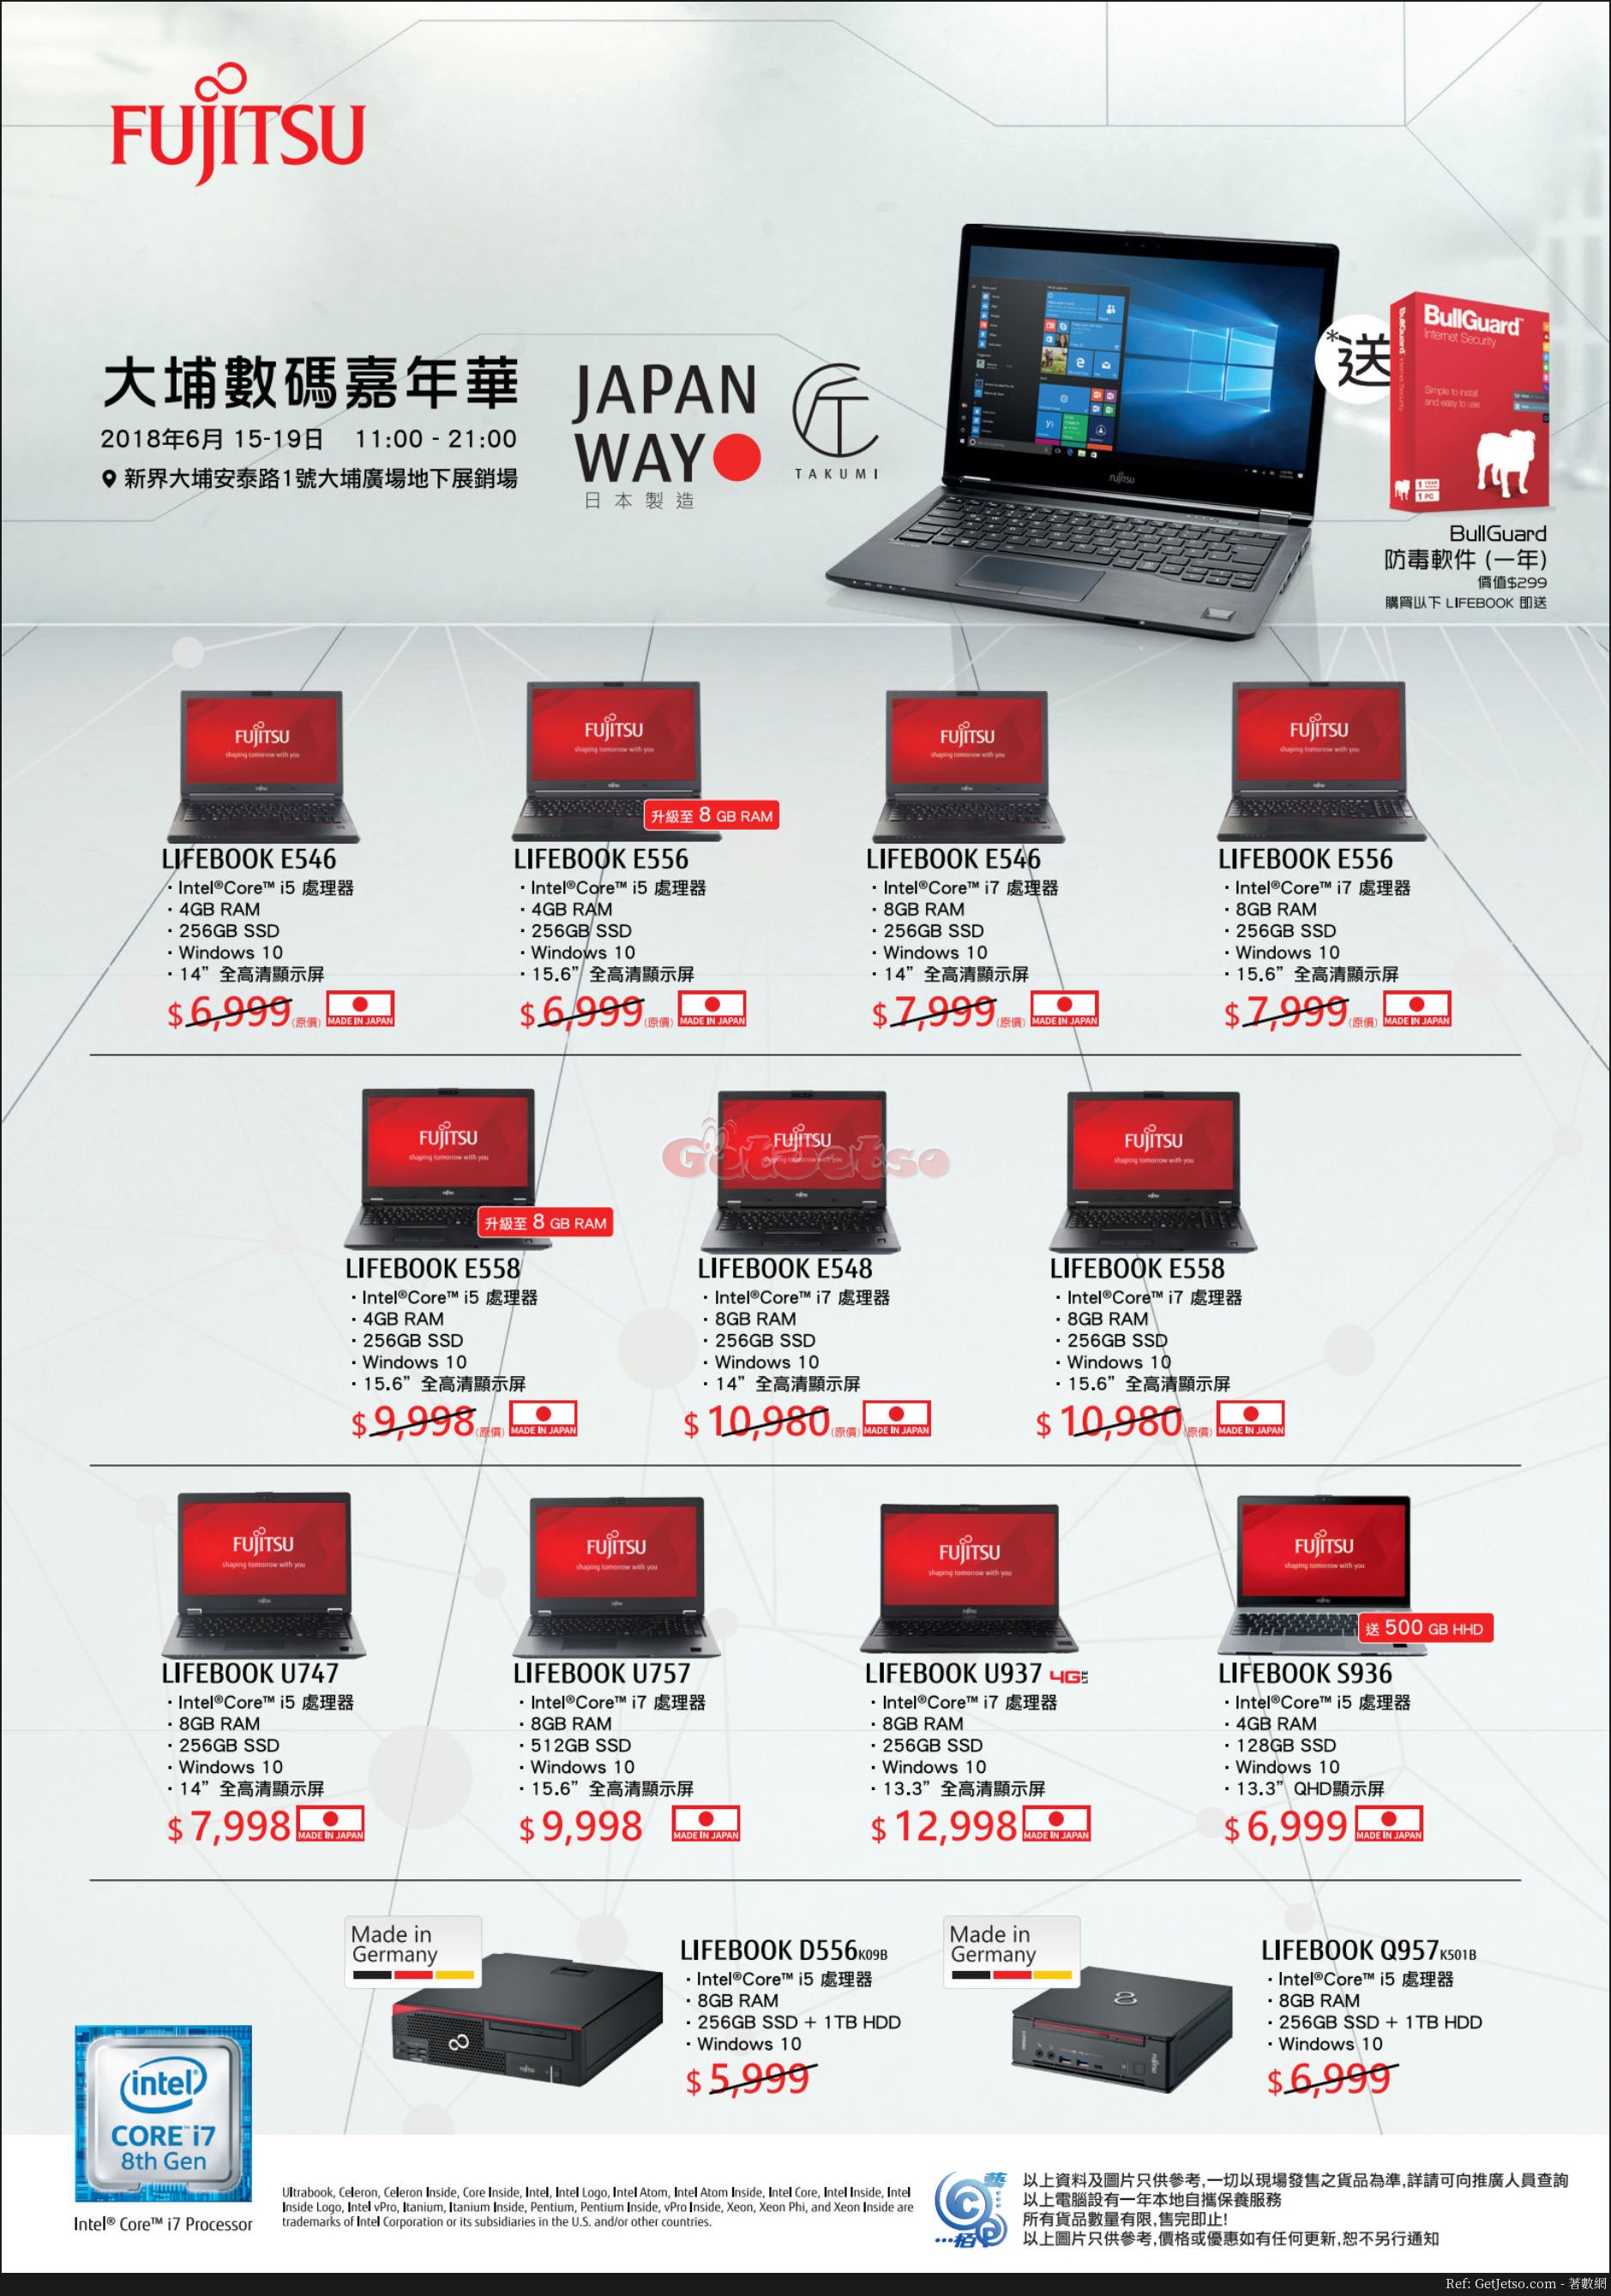 Fujitsu 電腦減價優惠@大埔數碼嘉年華(至18年6月19日)圖片1